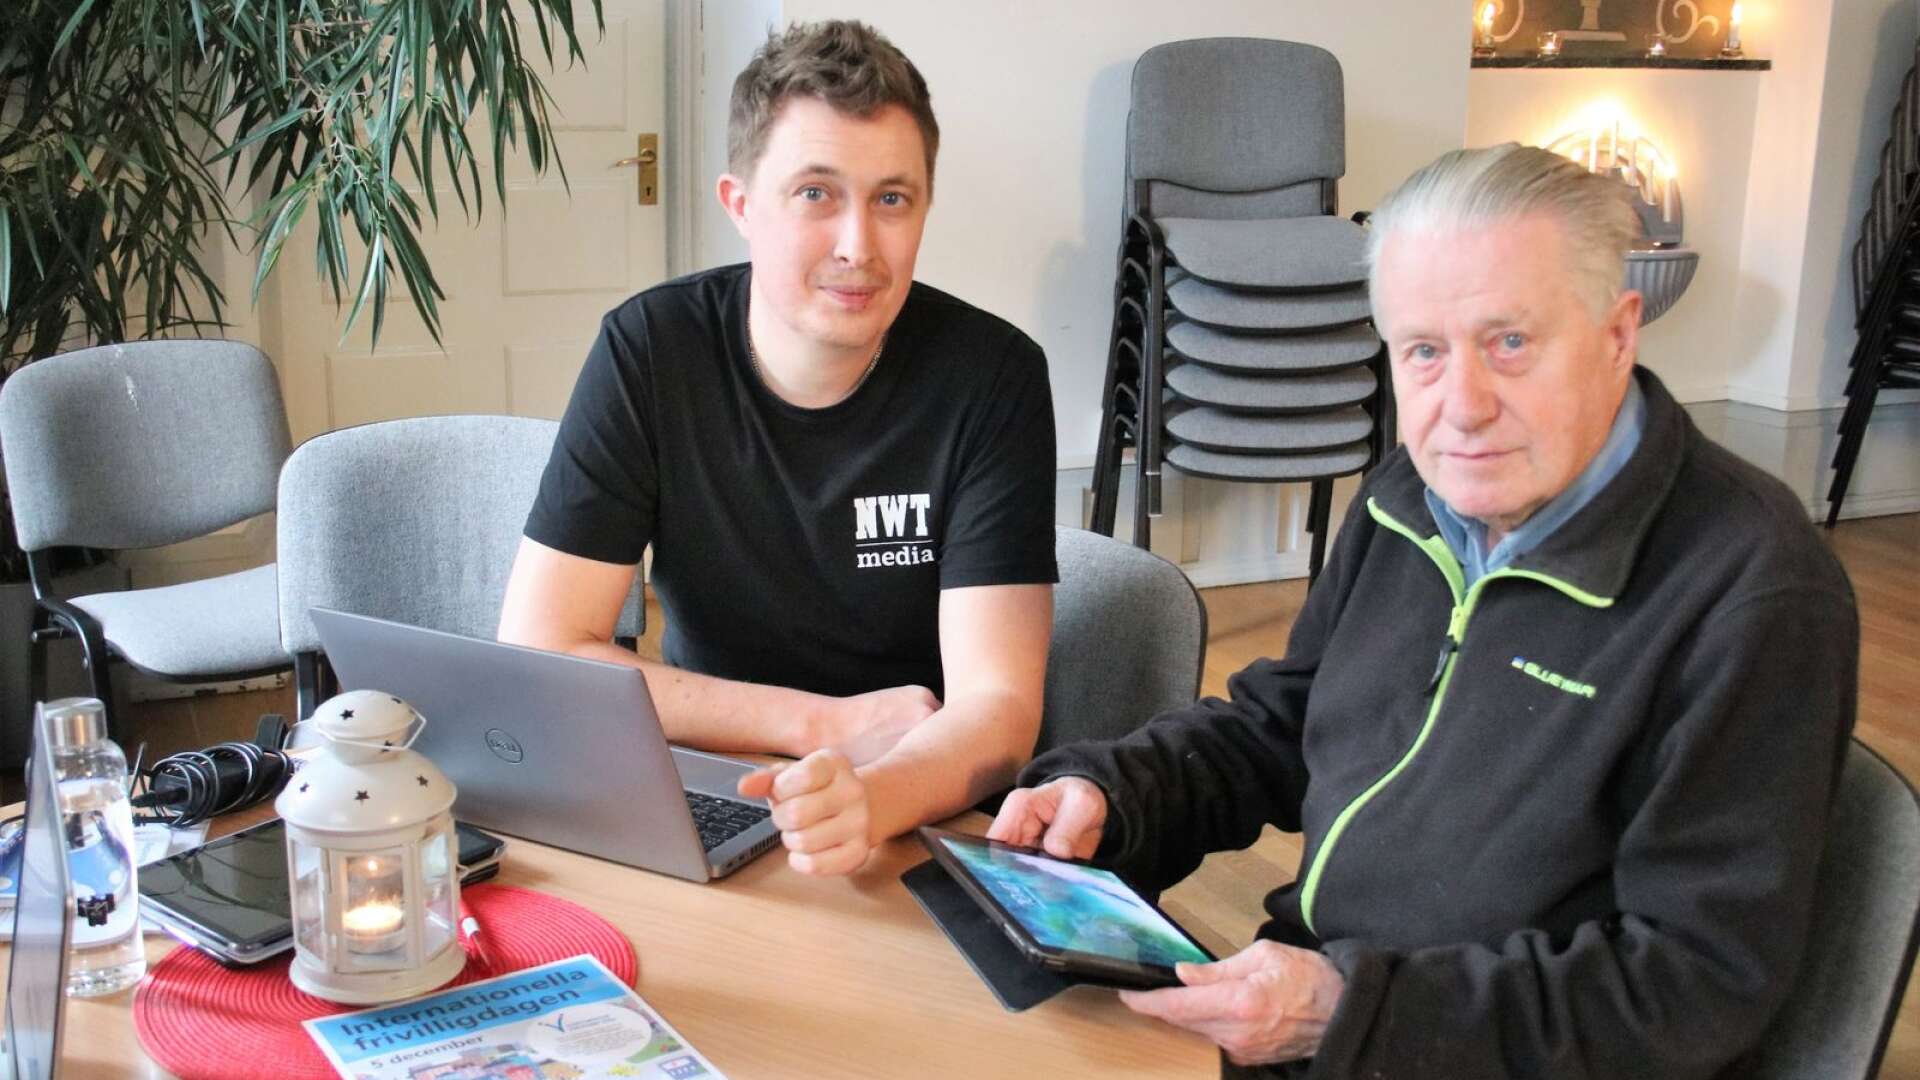 Alf Alfredson, 80 år, kommer från Göteborg men han har bott i Åmål i 55 år. Han passade på att få hjälp av Robert Wågberg på NWT Medias digitala support med att komma igång med att börja läsa Provinstidningen digitalt.